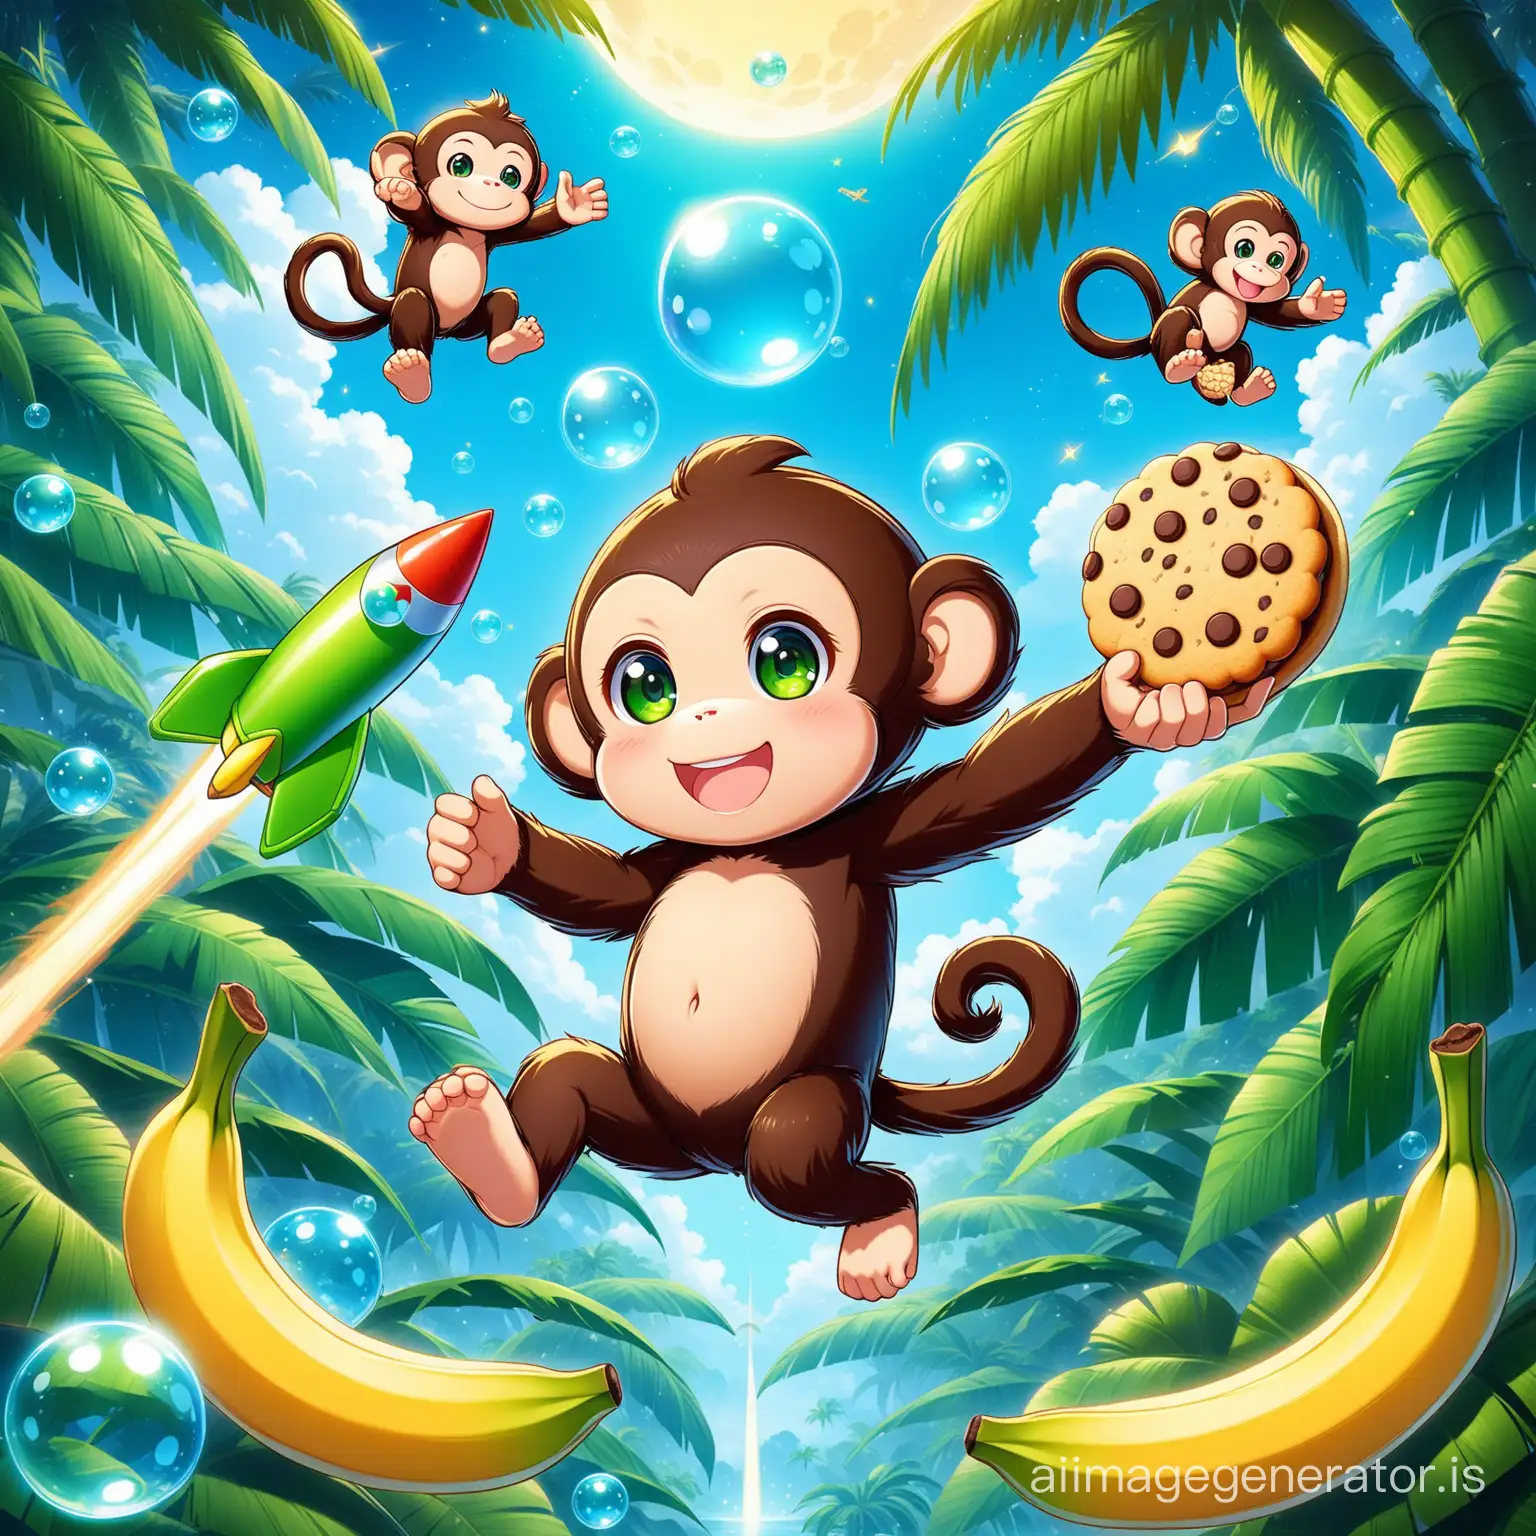 Joyful-Monkey-Cookie-Flying-with-Banana-in-Jungle-Bubble